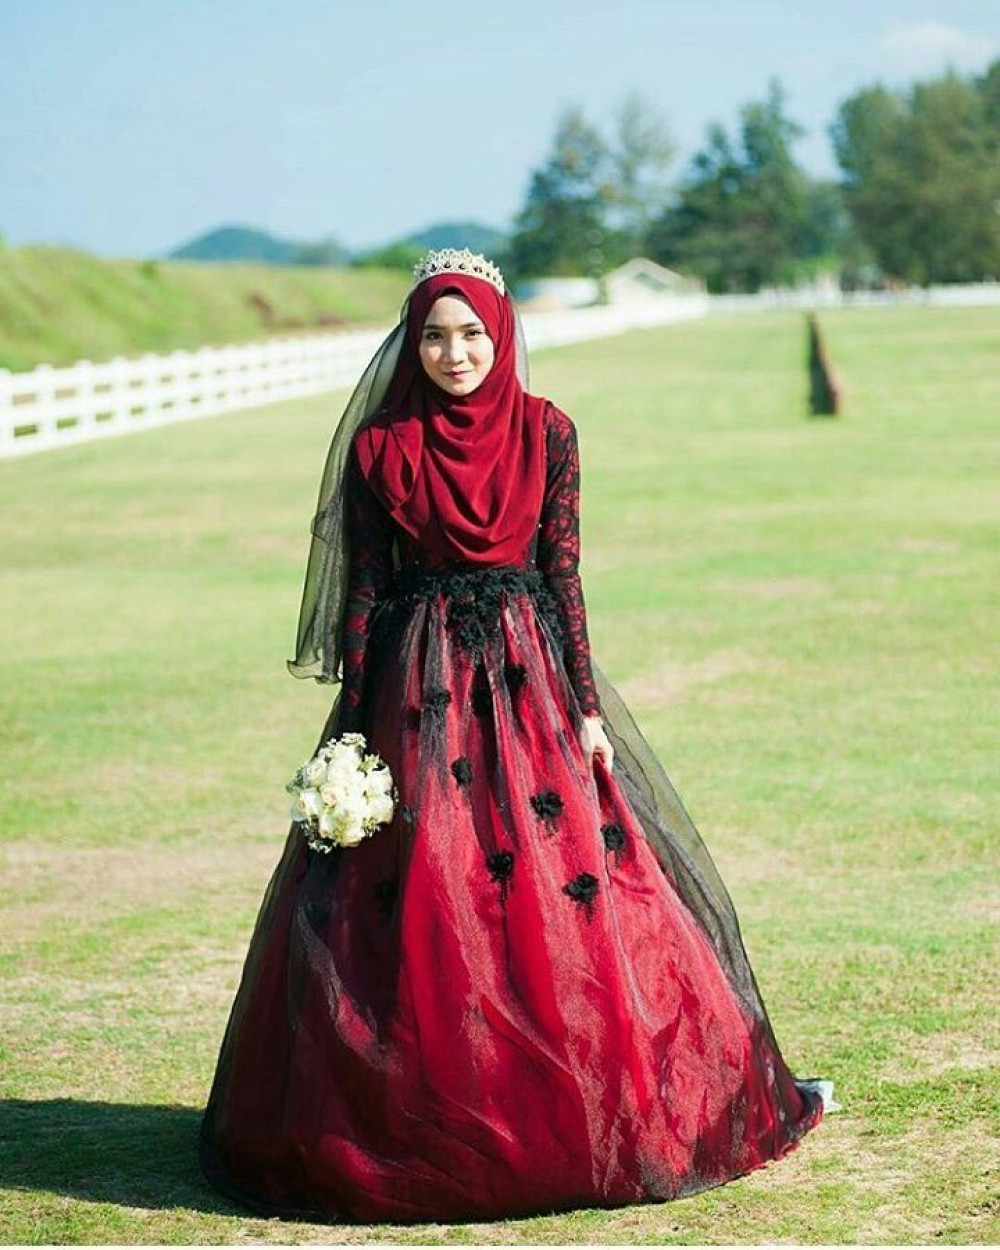 Gaun Pengantin Hijab Warna Merah : Pengantin jawa muslimah jilbab ...